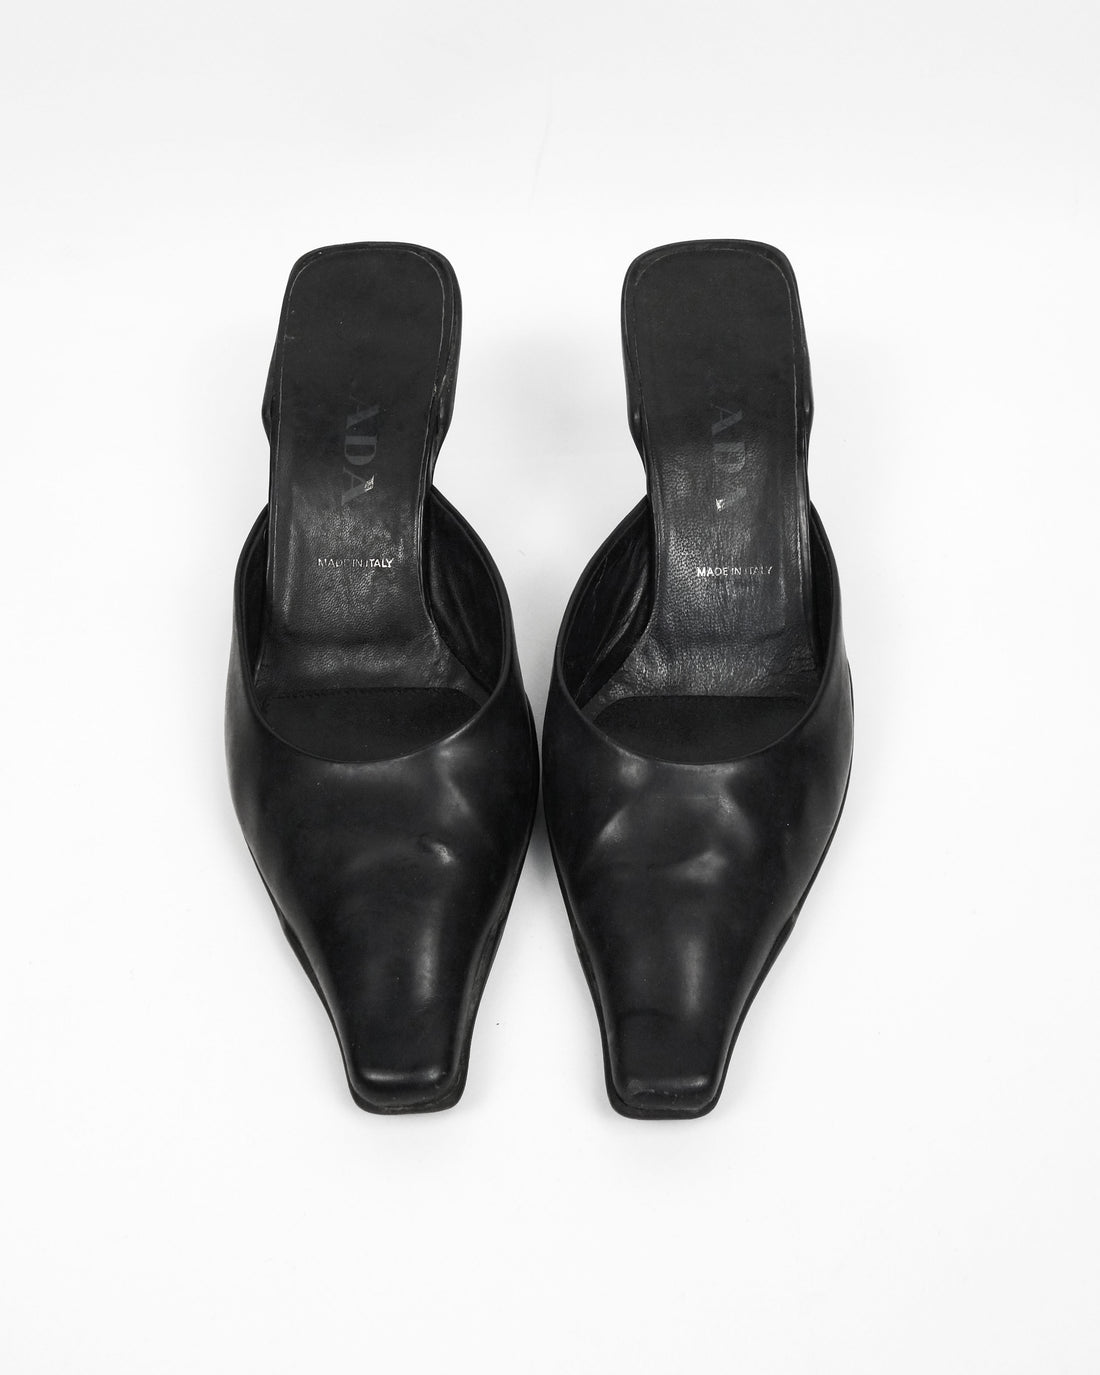 Prada Black Leather Mule Heels 1990's